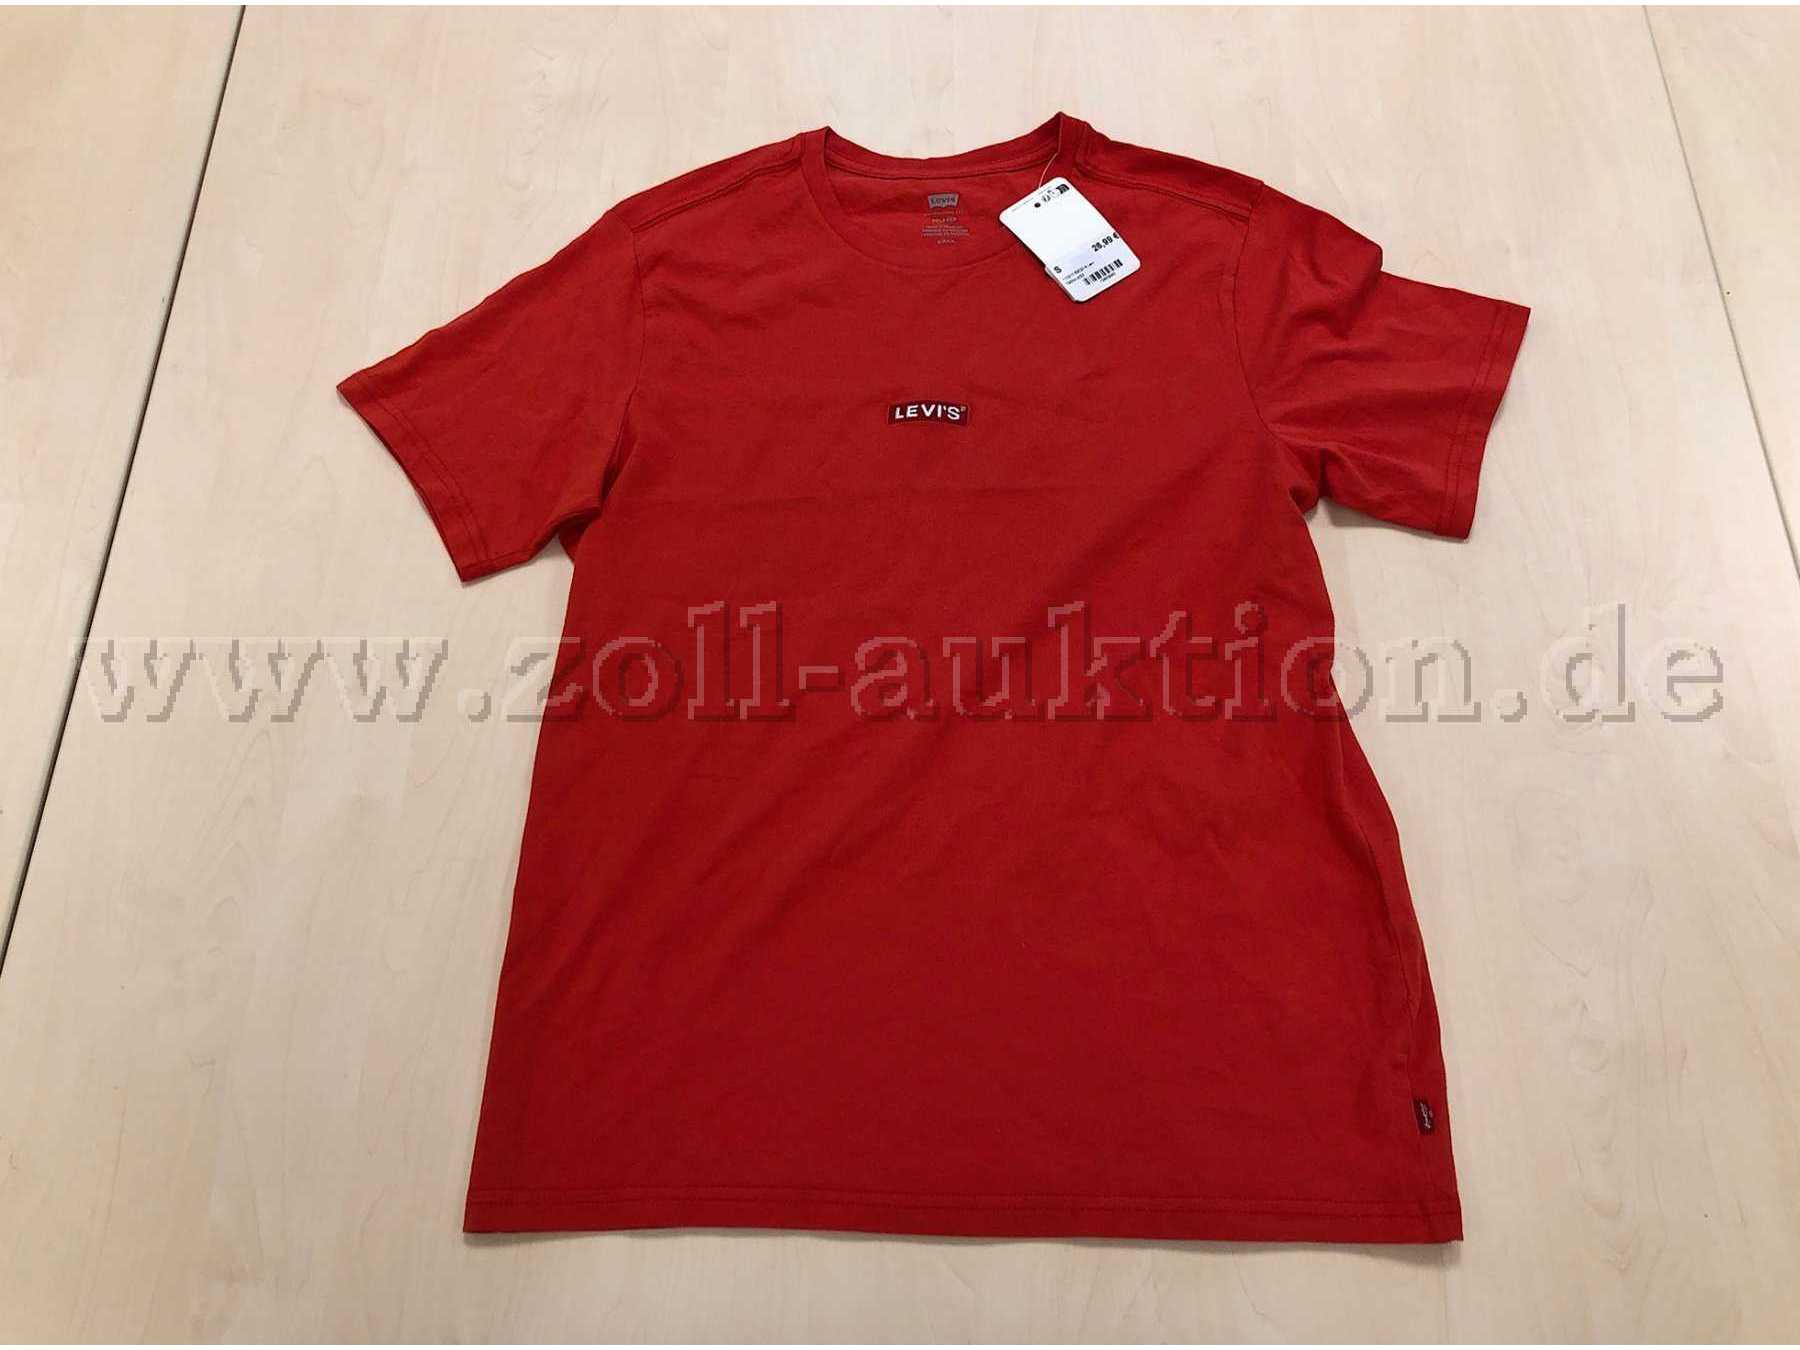 Rotes T-Shirt von Levis, Größe S. Vorderansicht.